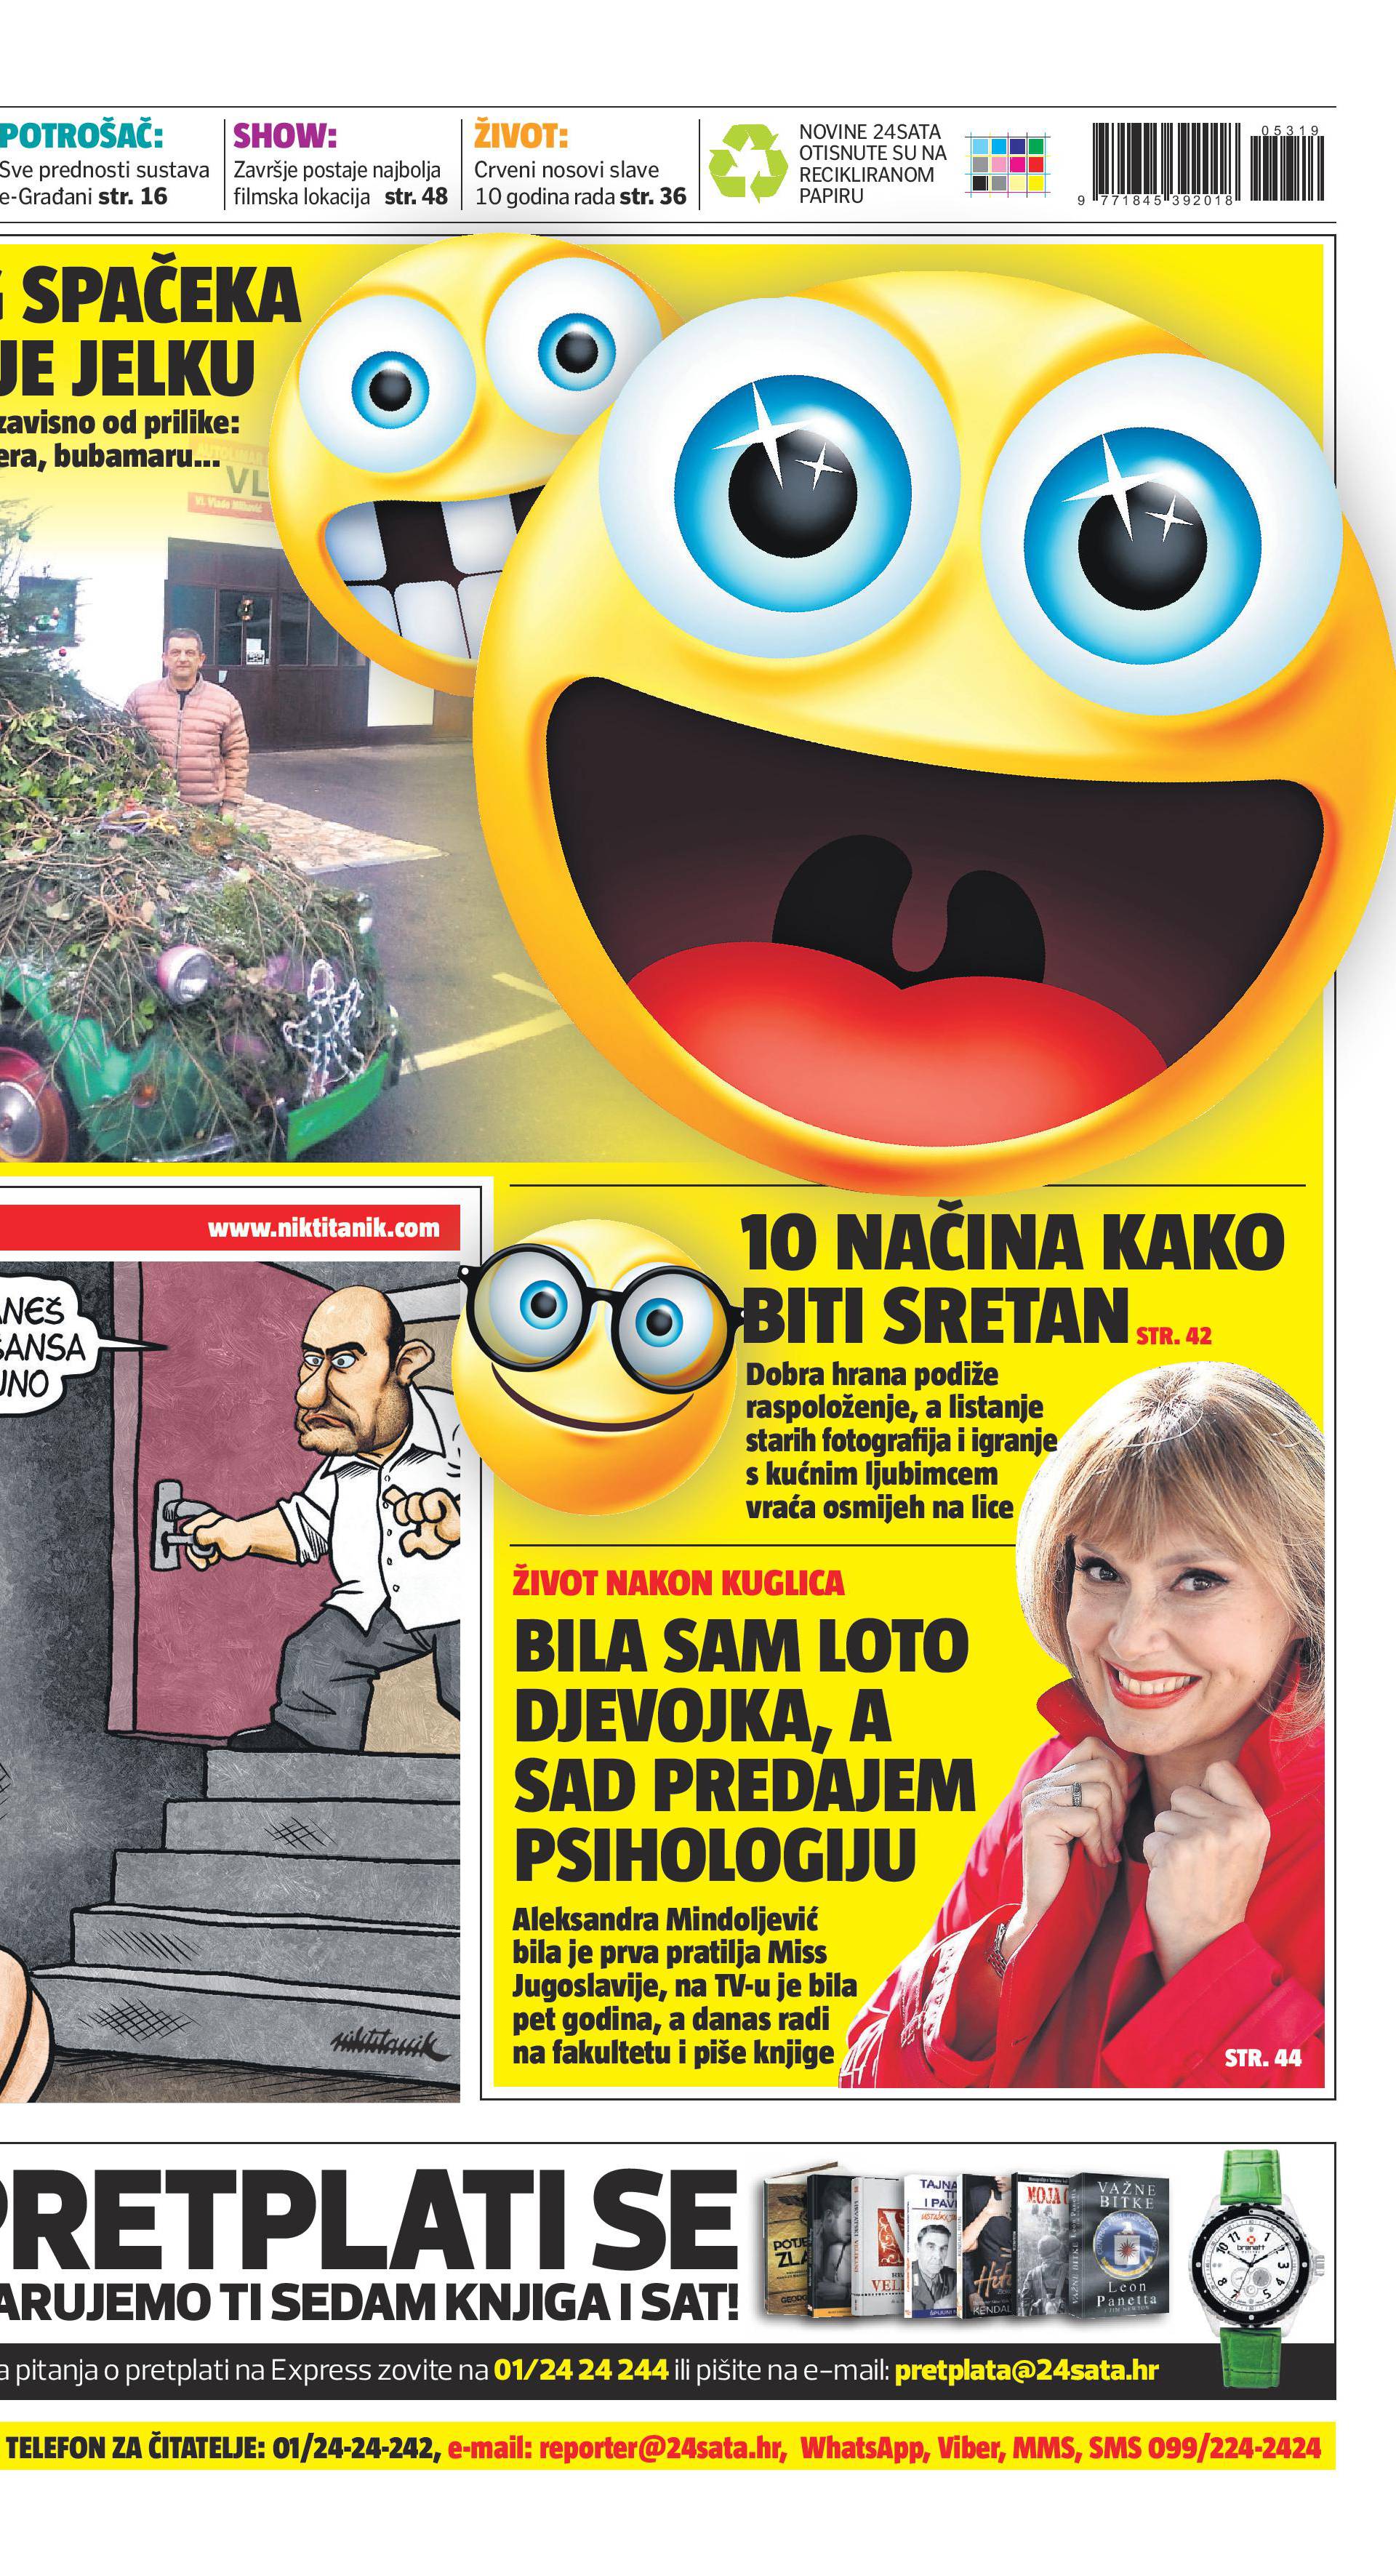 Danas u 24sata samo pozitiva: 100 sretnih vijesti iz Hrvatske